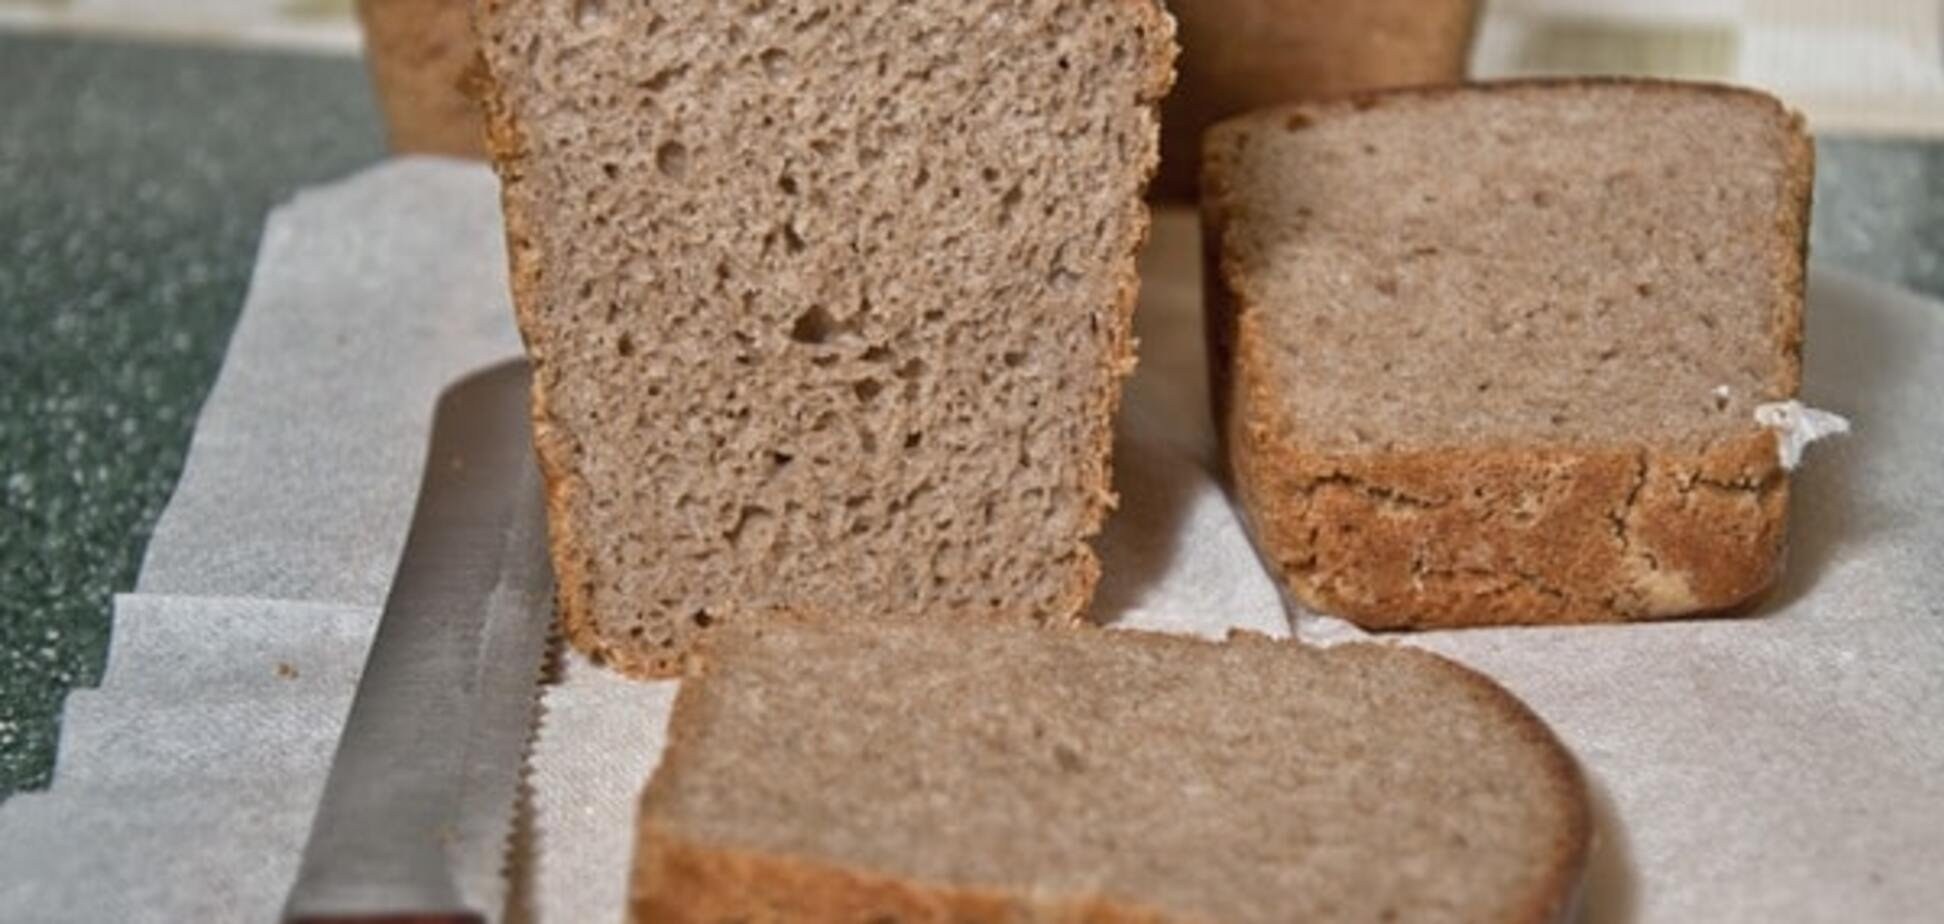 Пшеничный хлеб в форме. Ржано-пшеничный хлеб. Ржано-пшеничный хлеб Буханка. Ржано-пшеничный хлеб Дарницкий. Хлеб Бинятовский ржано пшеничный.